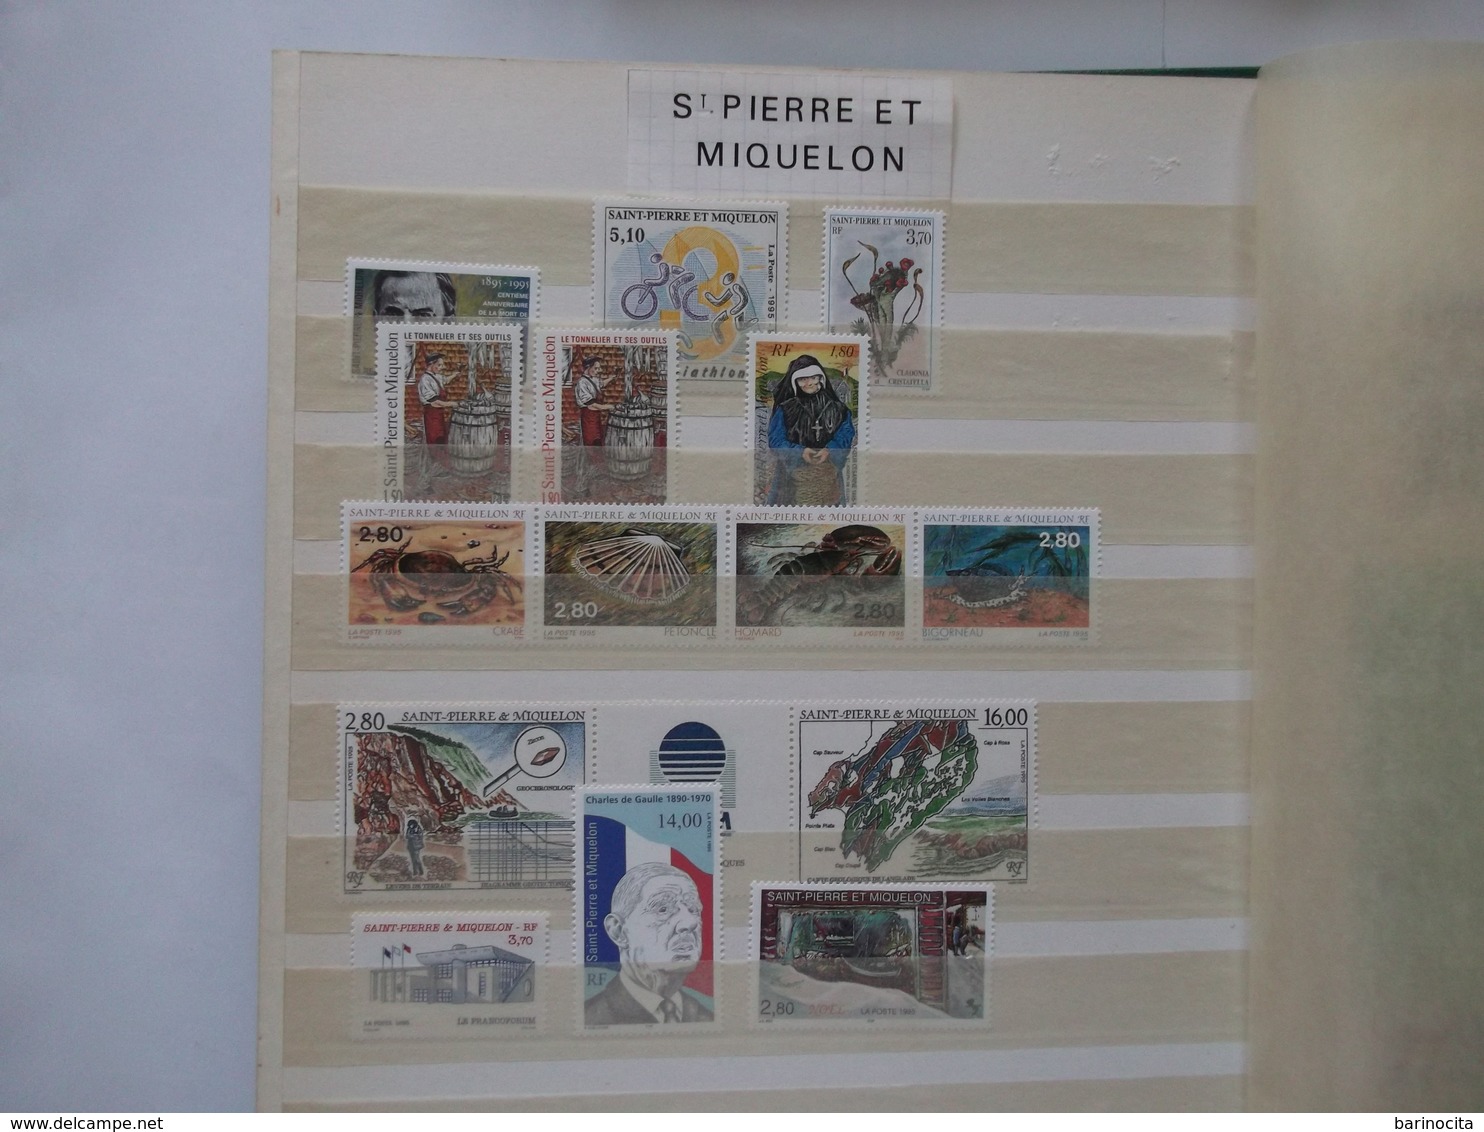 SAINT PIERRE Et MIQUELON    Année 1995  Complete Du N° 609 Au 623  Neuf ( Voir Photo) Cote 34,30  Euros - Années Complètes